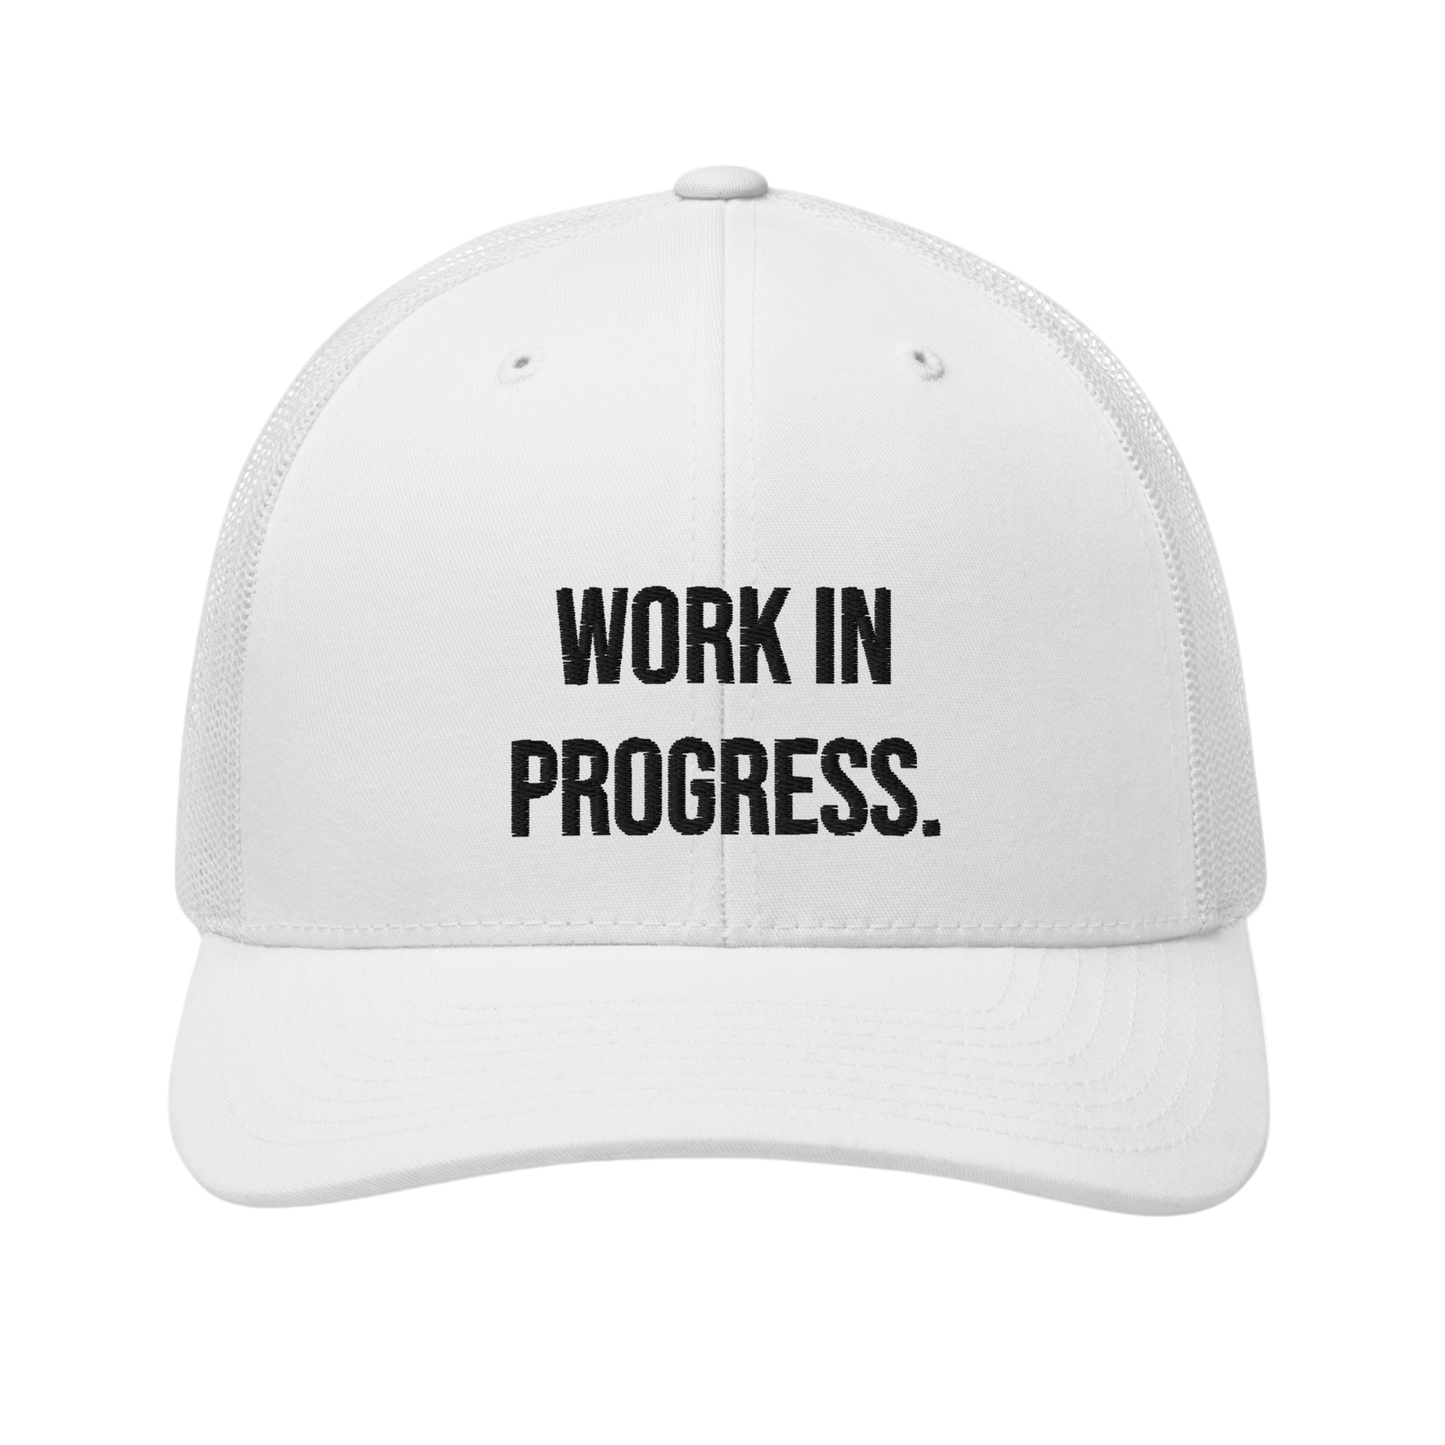 Embroidered "WORK IN PROGRESS" White Trucker Cap